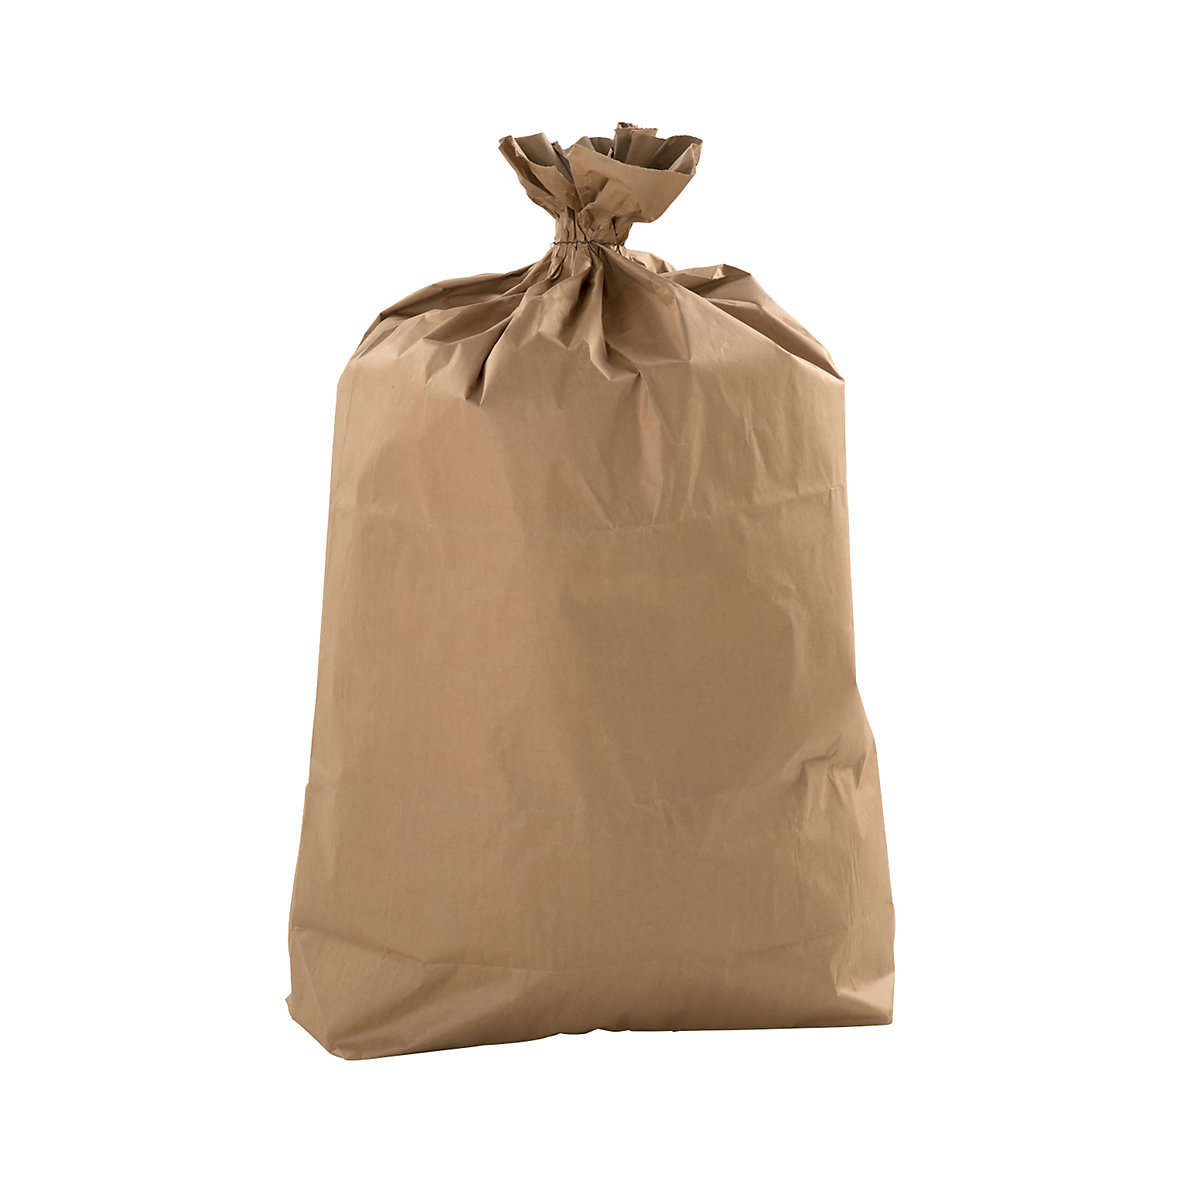 Relevo: Bolsas de basura 10-20 litros, 15 unidades, color marrón